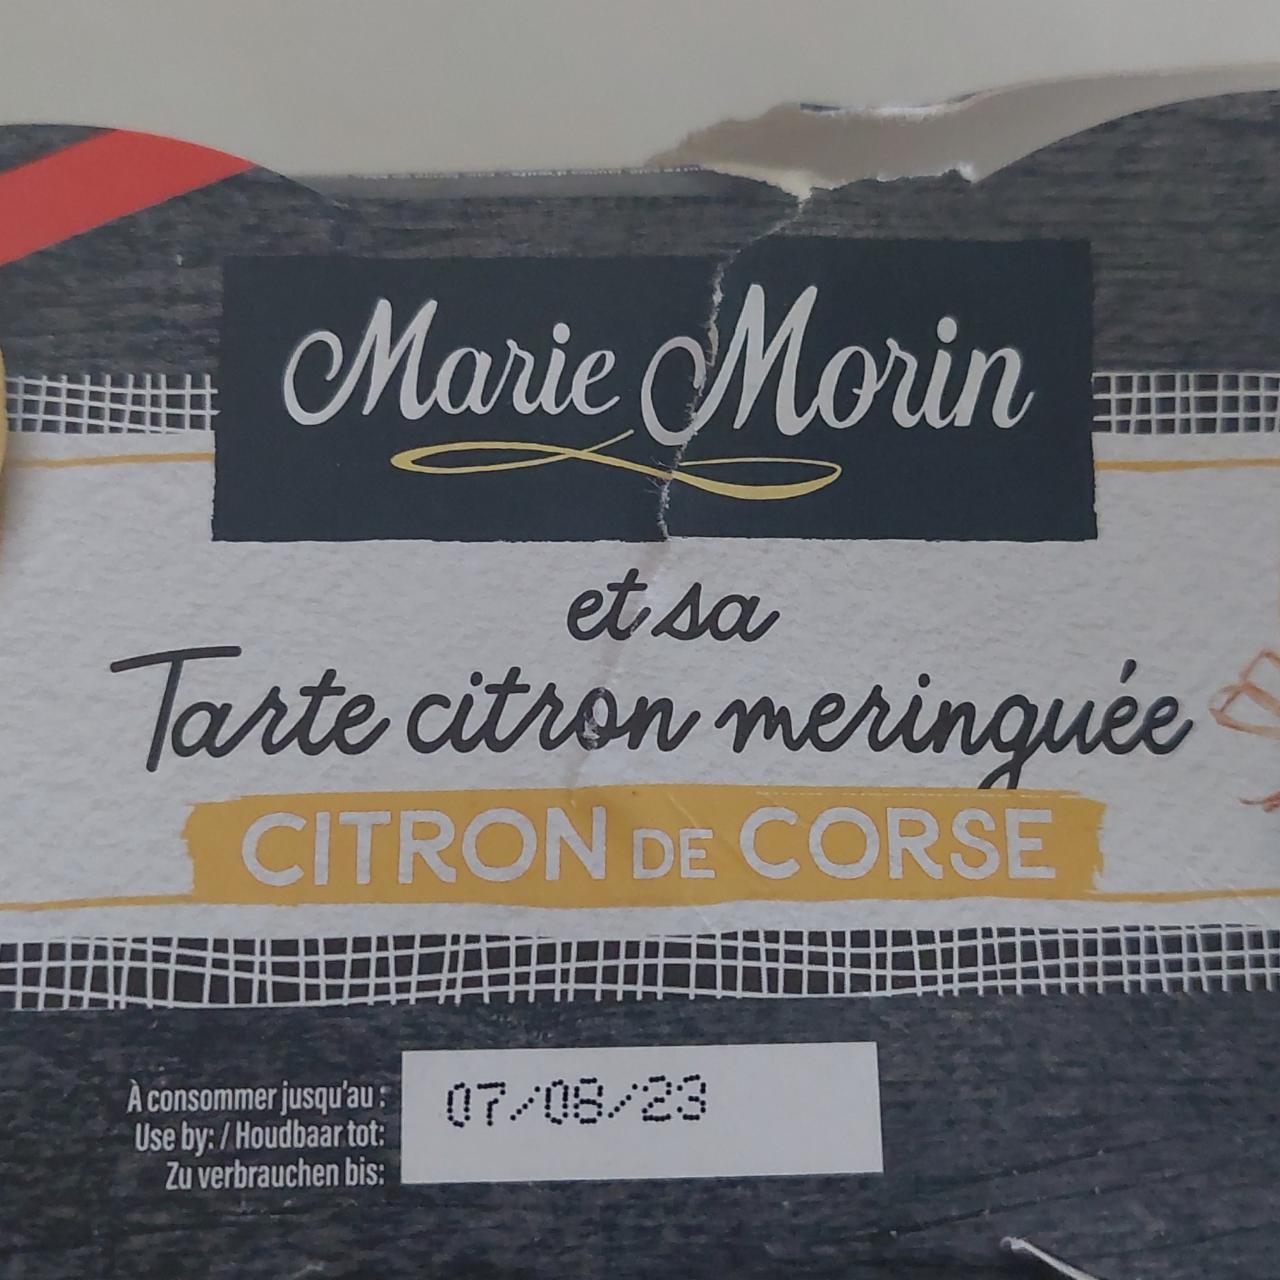 Fotografie - Tarte au citron meringuée Citron de Corse Marie Morin